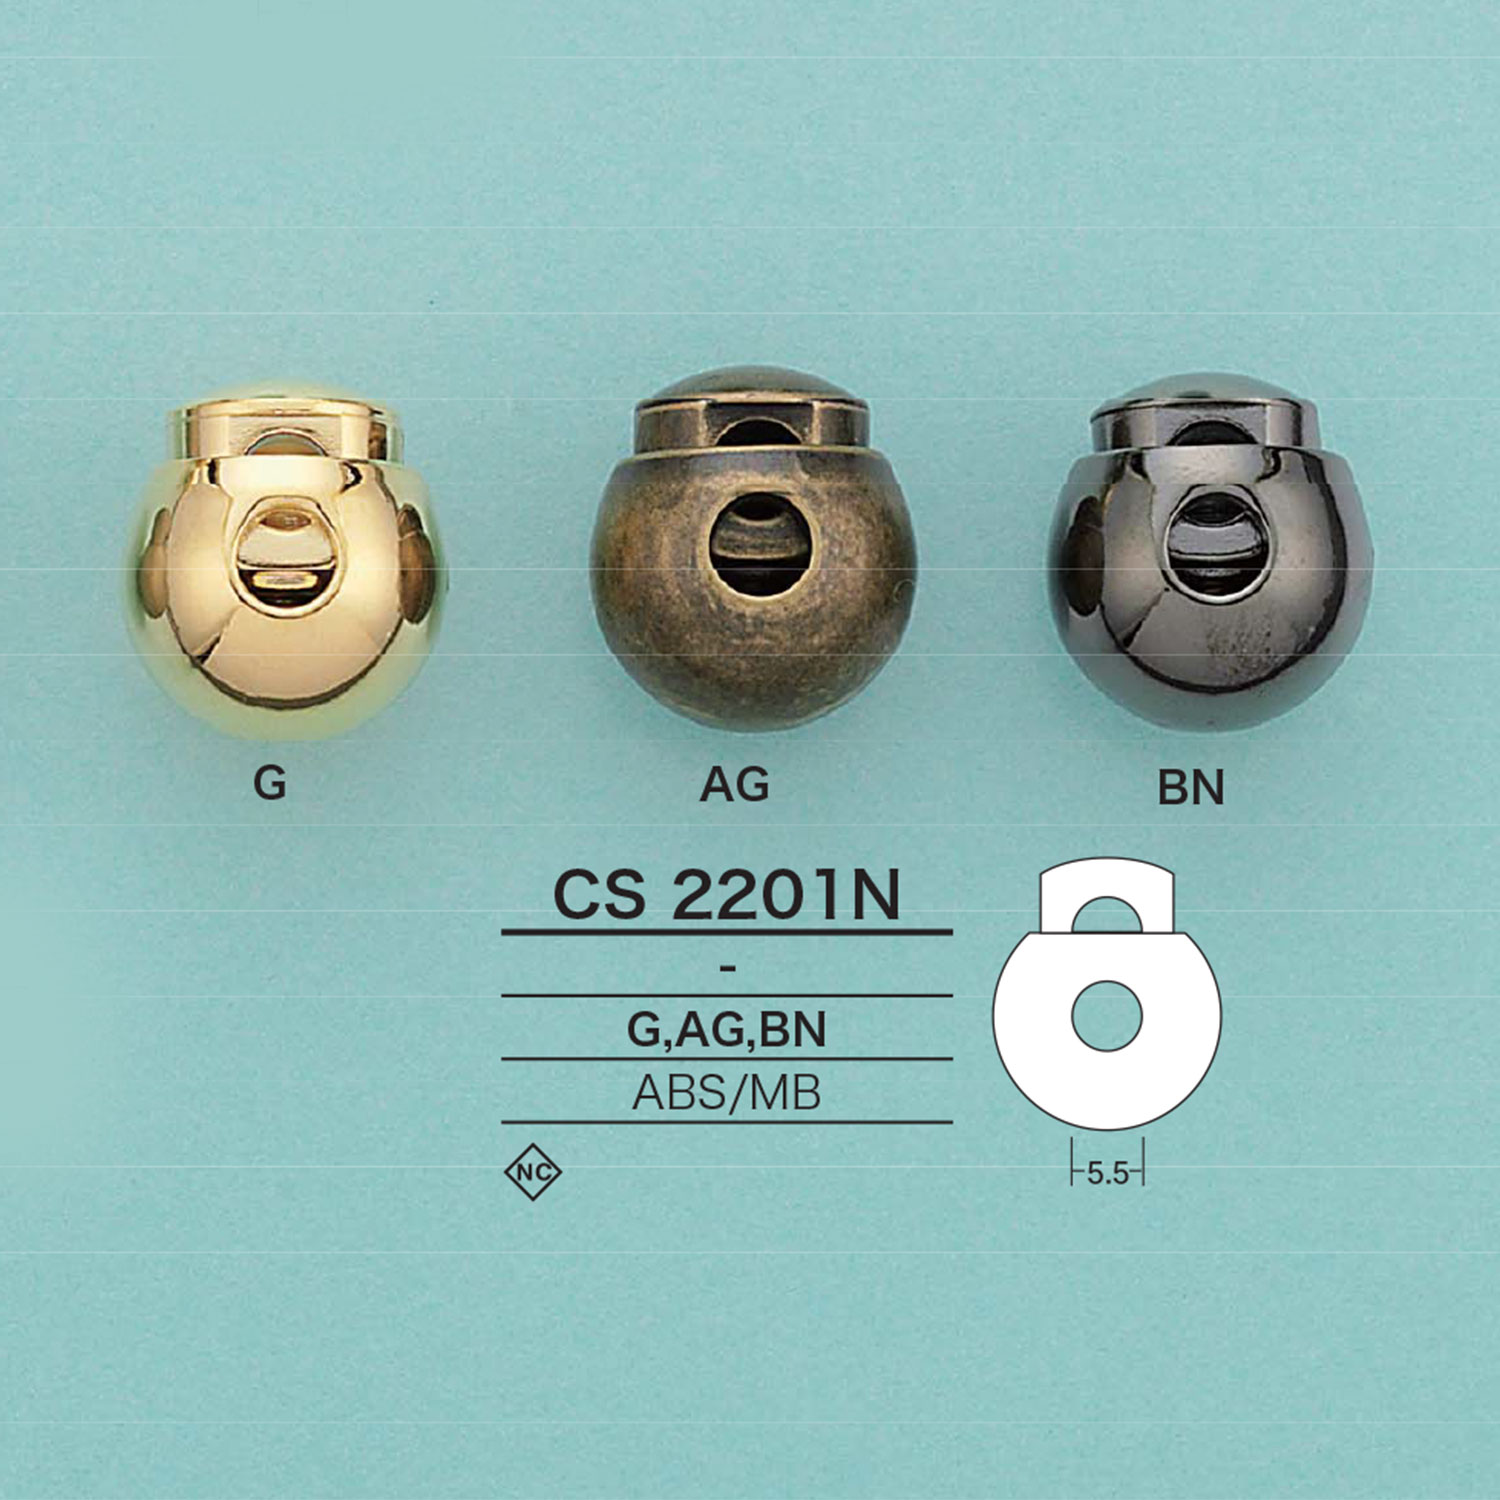 CS2201N 丸型コードロック[バックル・カン類] アイリス